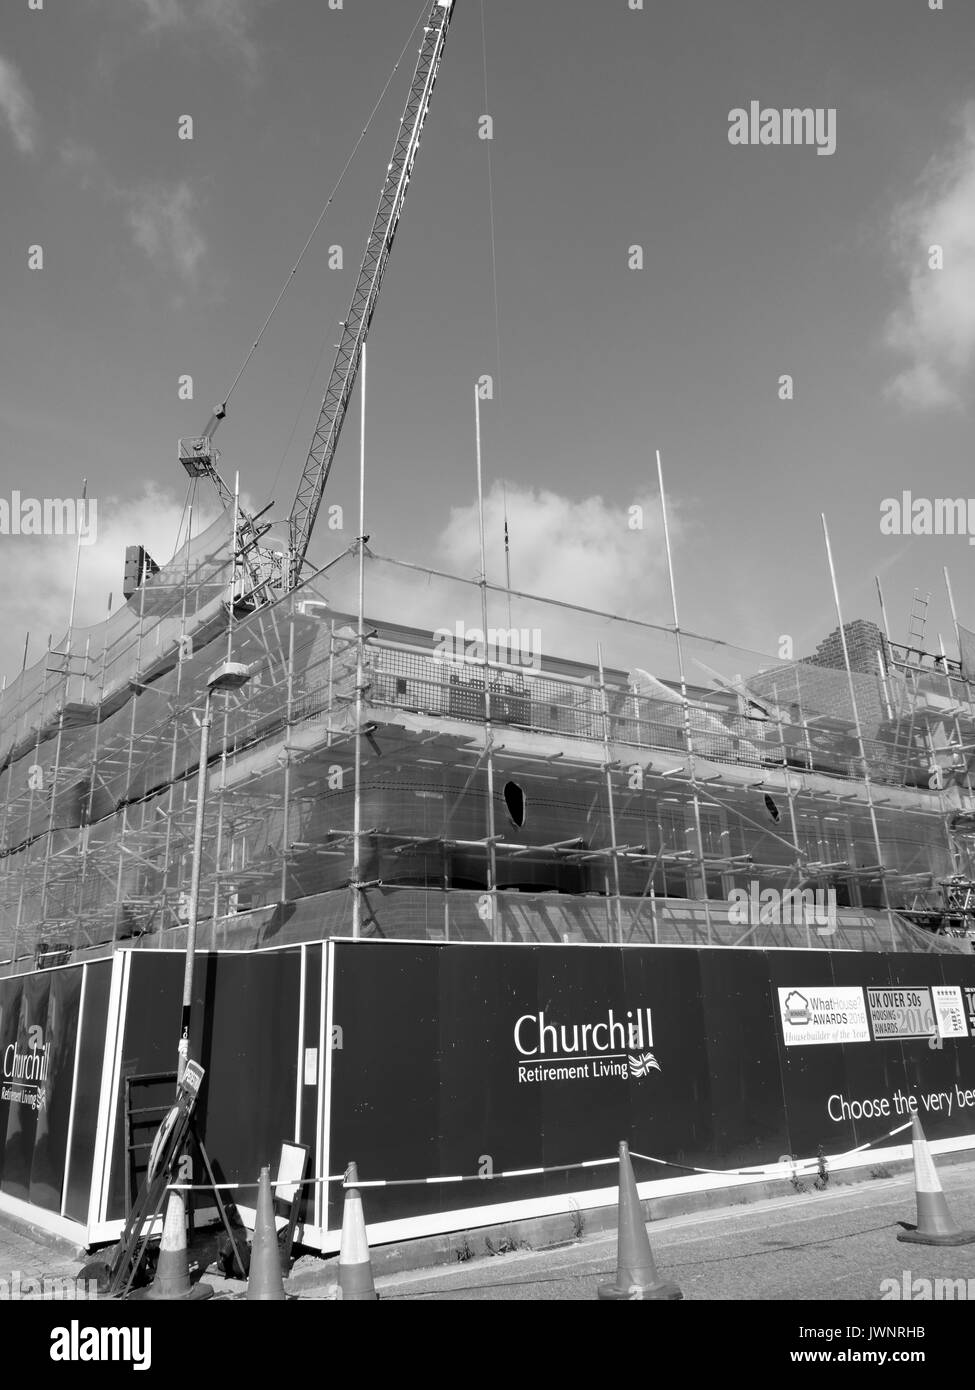 Churchill Previdenza Pensionamento vivente appartamento sito in costruzione sviluppo Foto Stock